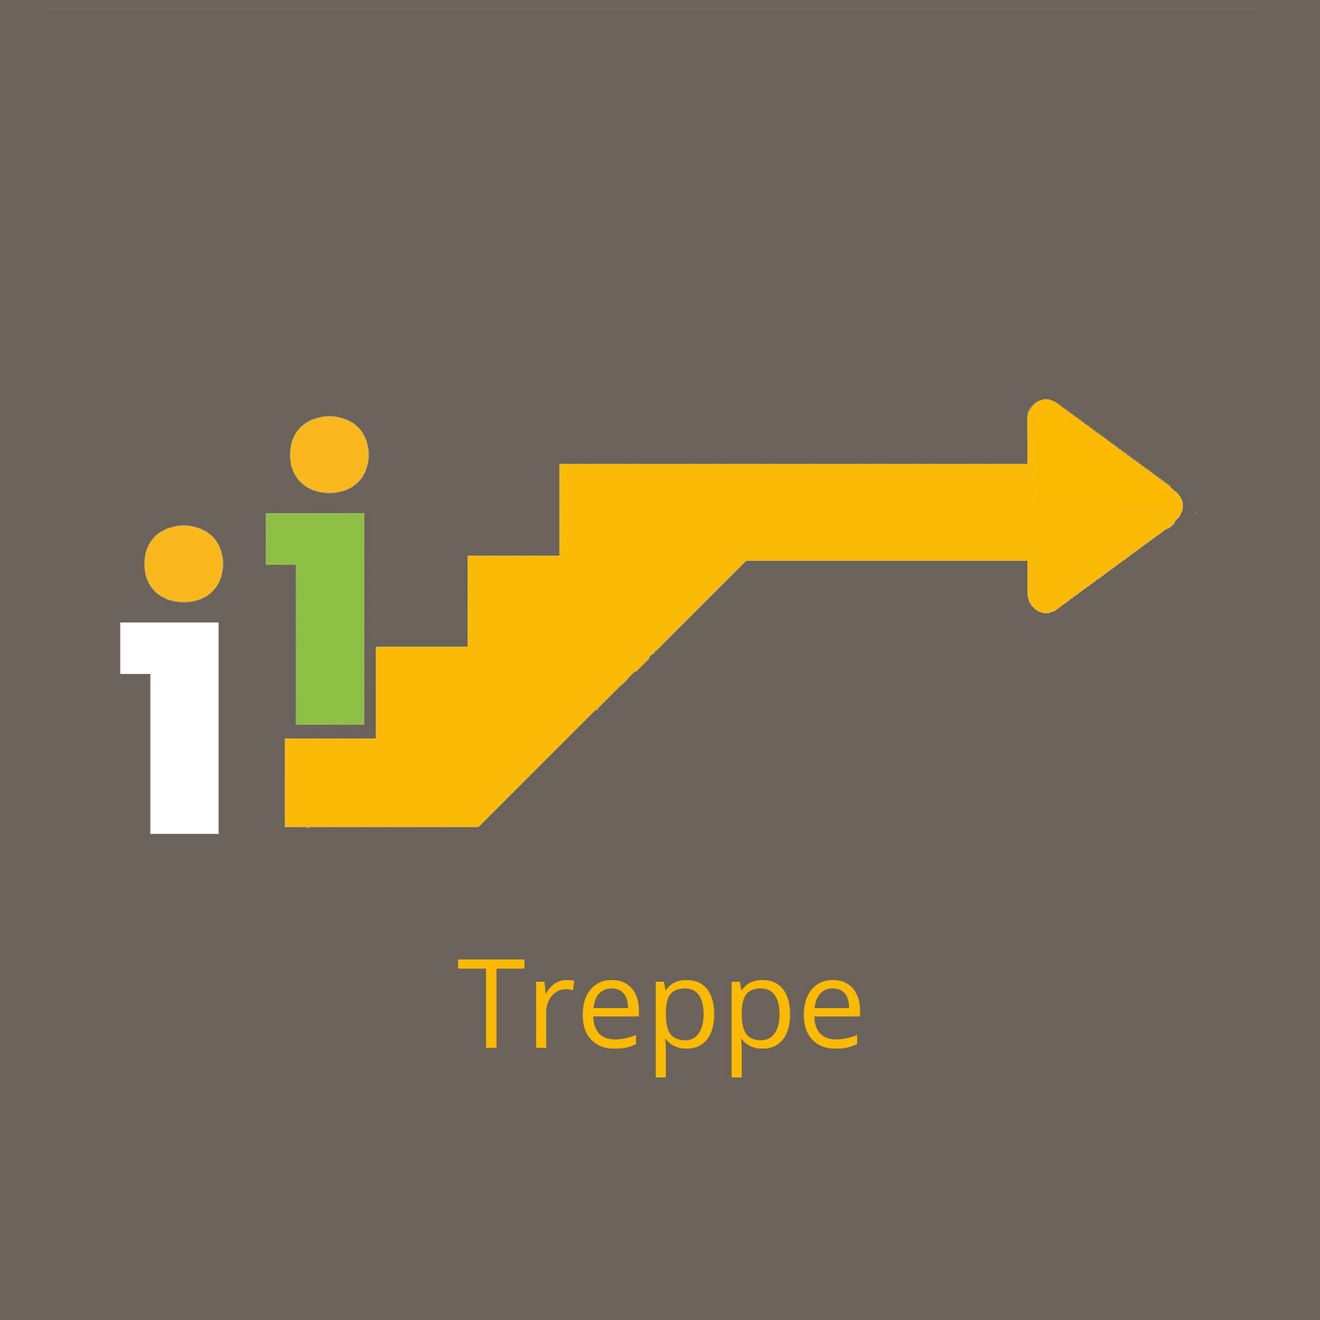 Treppe_1600